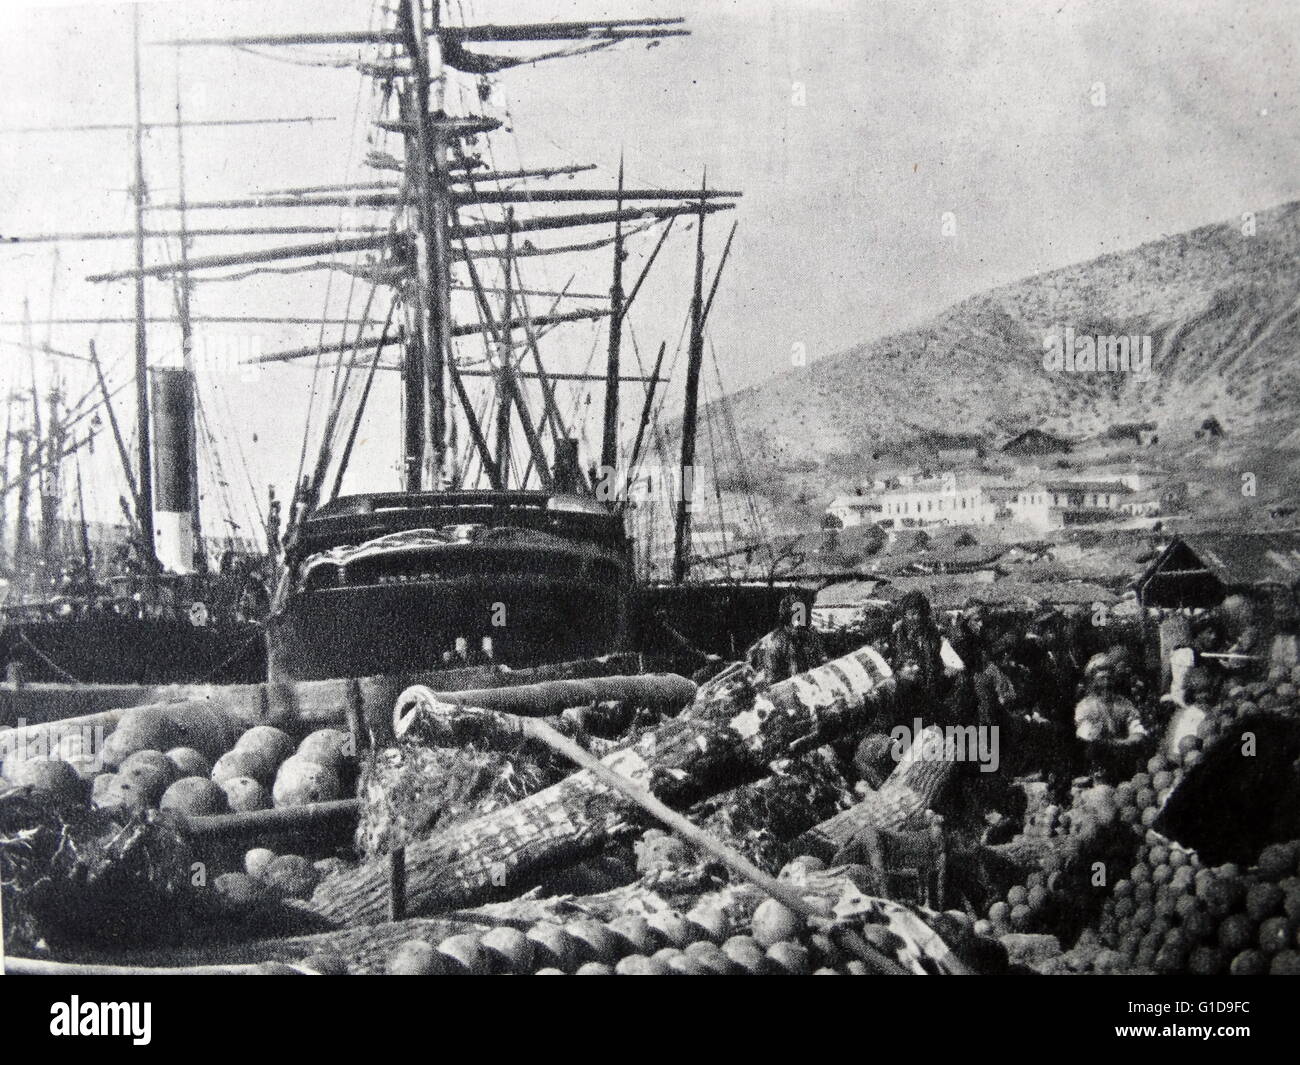 L'ordnance wharf, passamontagna 1855 fotografata da Roger Fenton. Fenton è stato il pioniere della fotografia di guerra che ha stabilito la sua reputazione durante la guerra di Crimea 1853-1855 Foto Stock